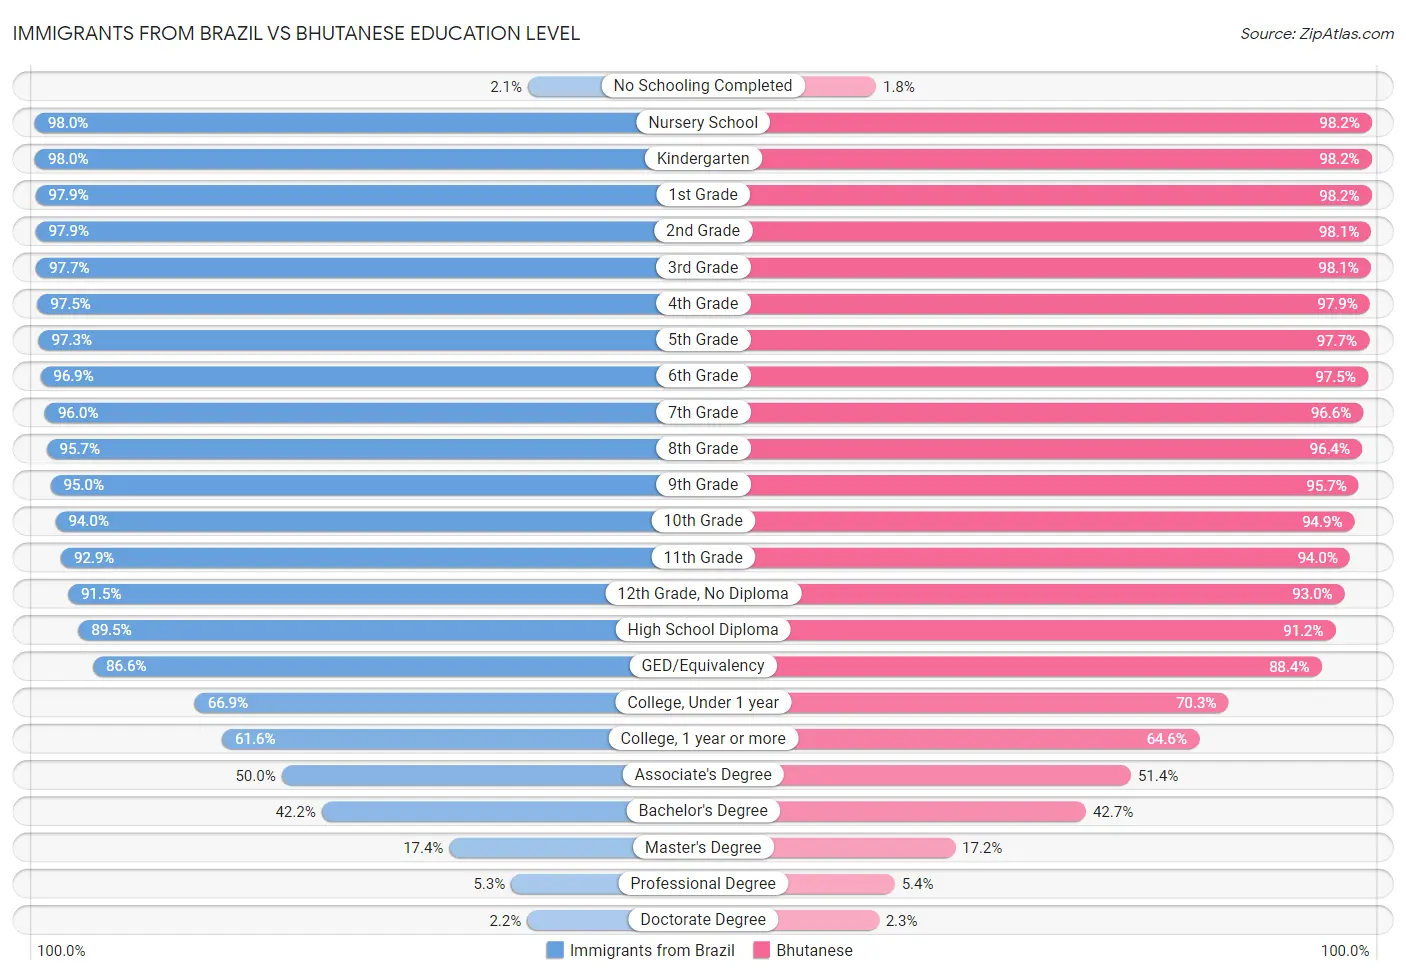 Immigrants from Brazil vs Bhutanese Education Level